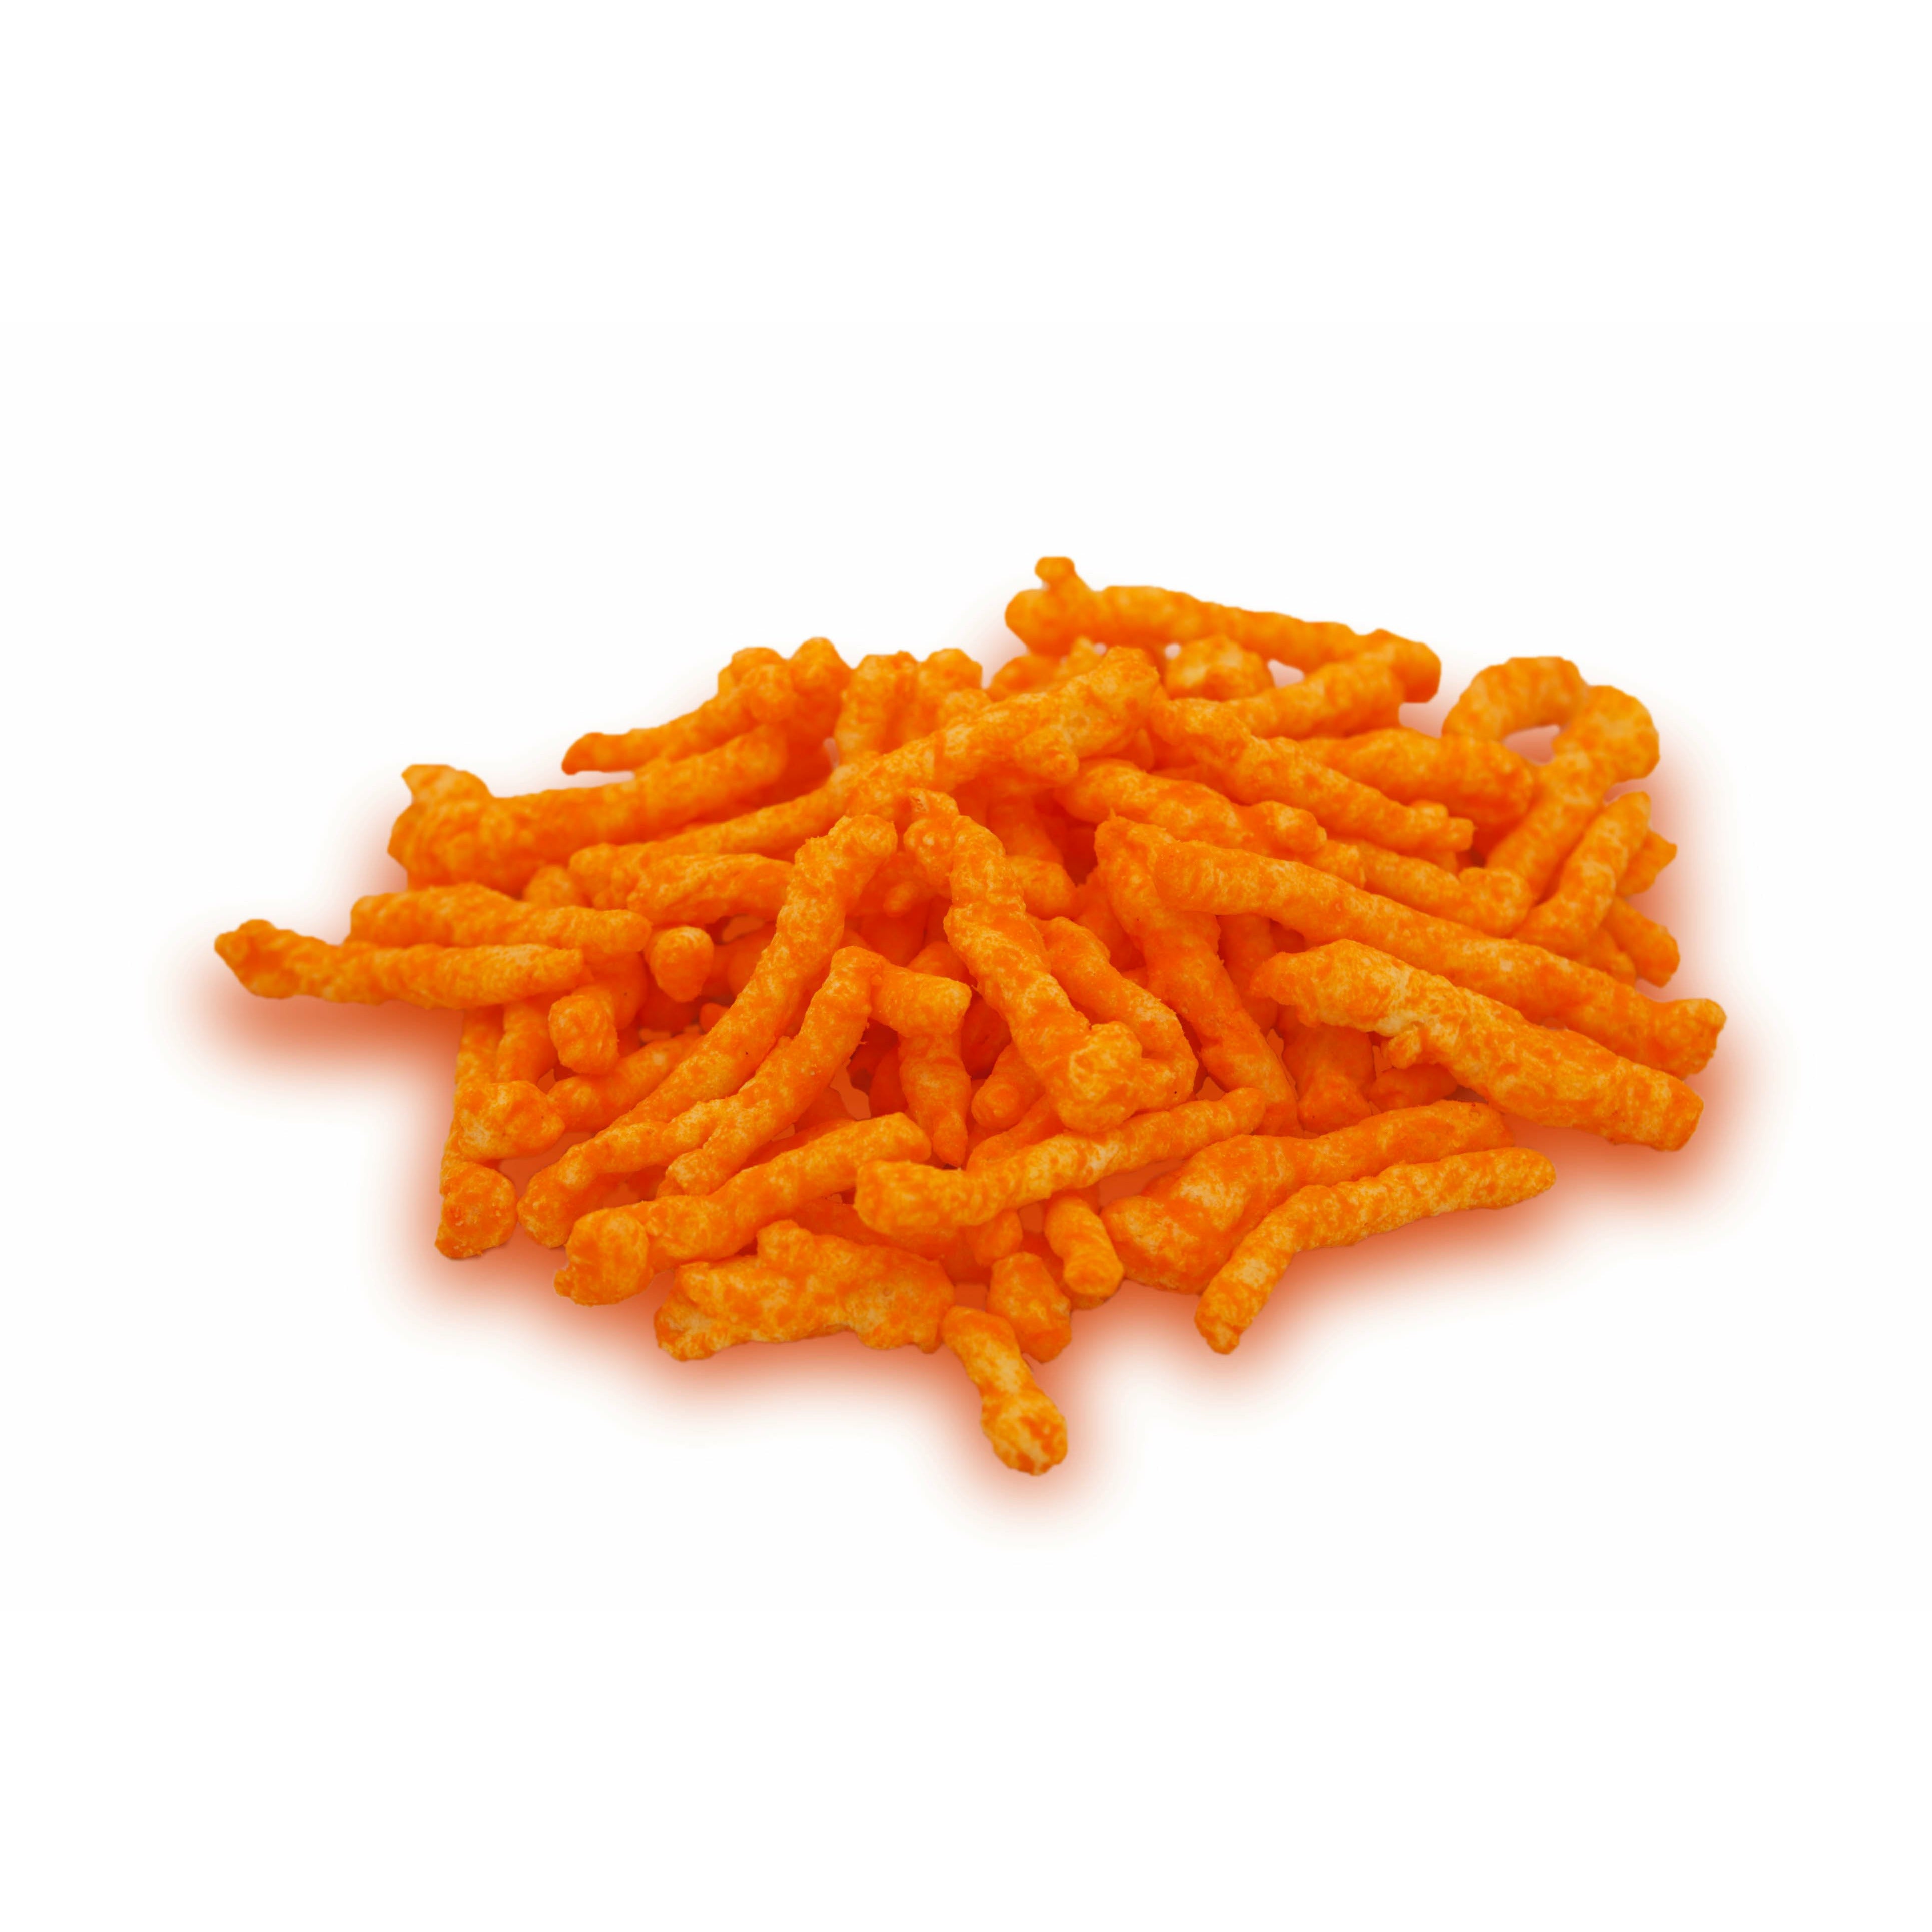 Un tas de chips allongés de couleur orange